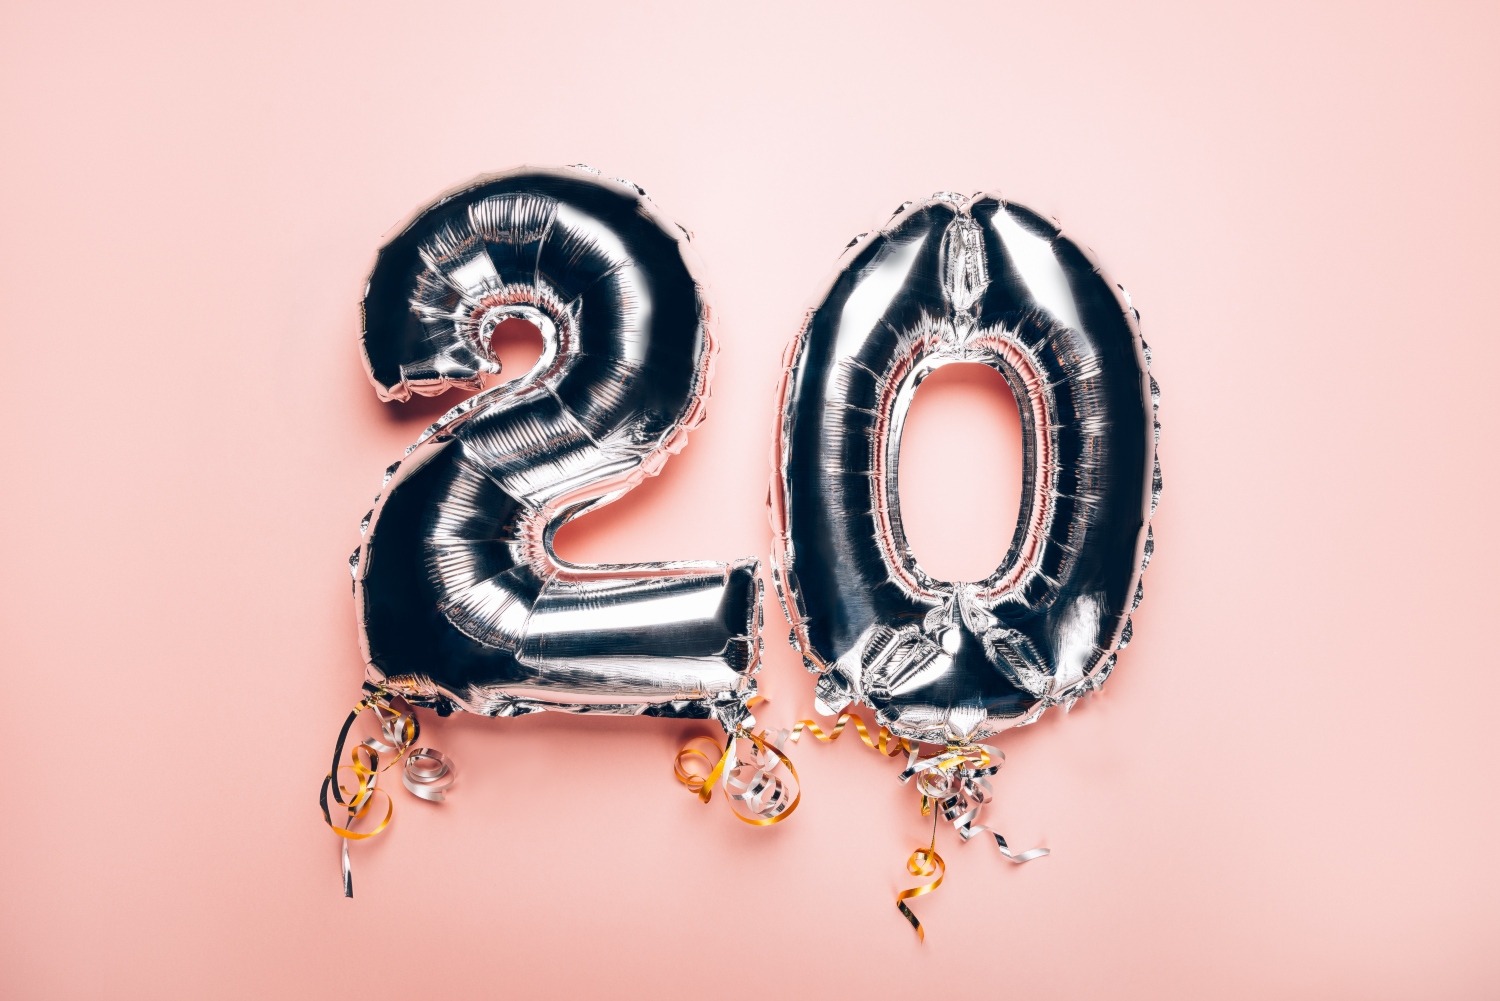 Anniversaire 20 ans : toute la deco d'anniversaire 20 ans